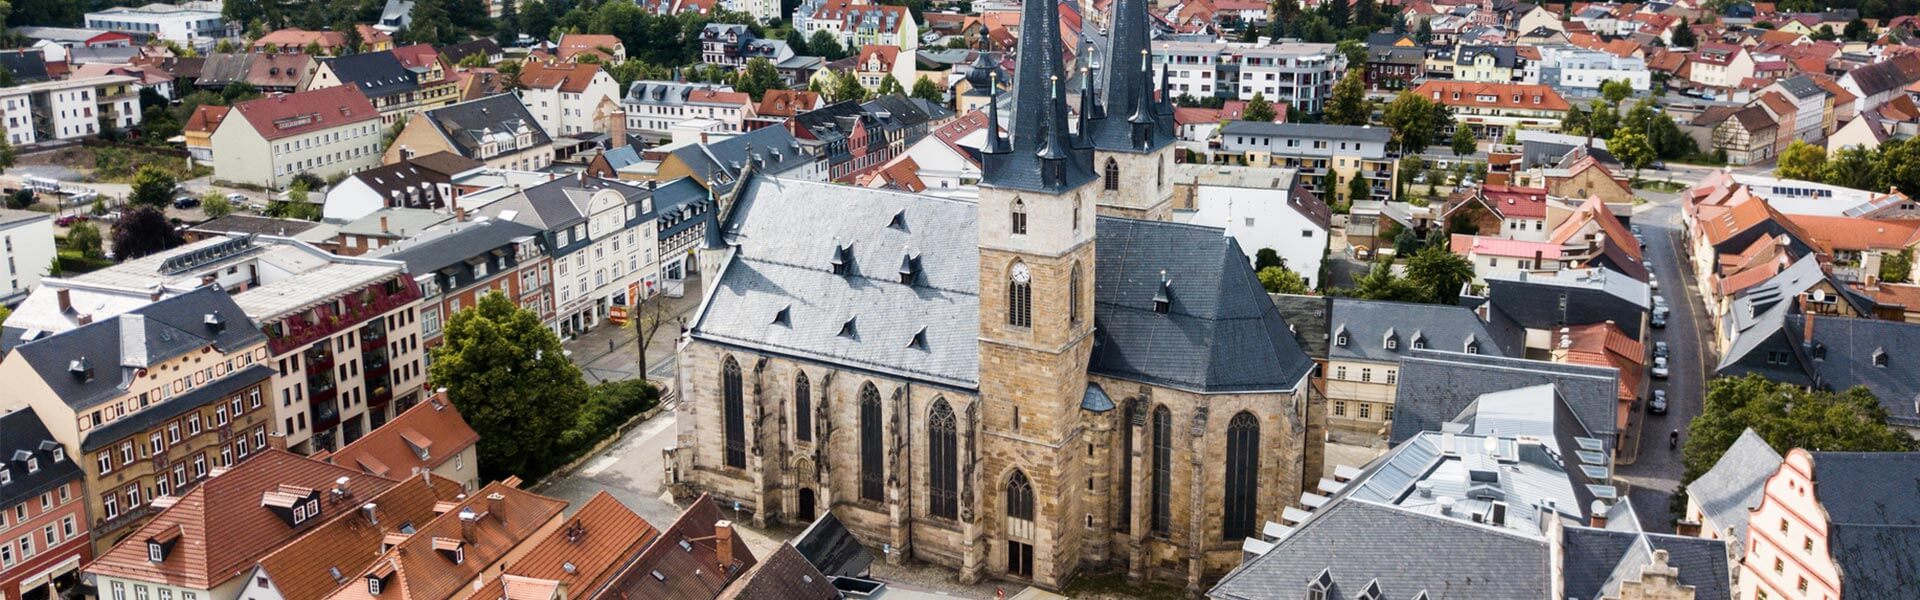 Blick auf Saalfeld mit Johanneskirche